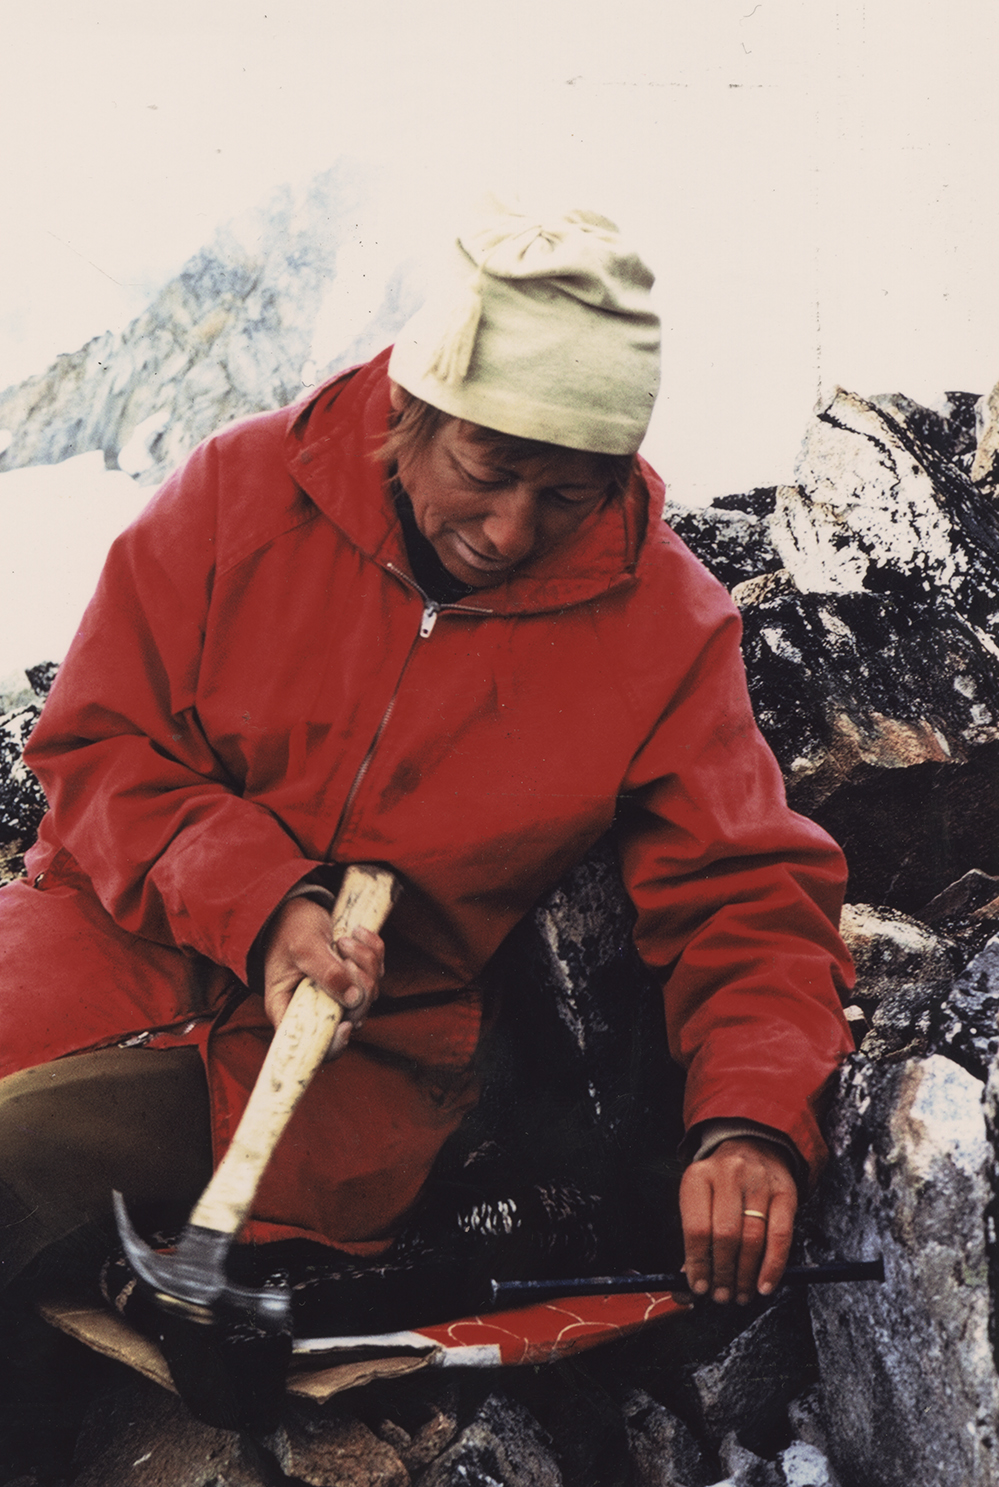 Une femme vêtue d’un manteau rouge et d’un bonnet blanc est assise, appuyée contre le rocher, et manie un marteau tout en tenant une longue pointe en métal incrustée dans le soubassement.